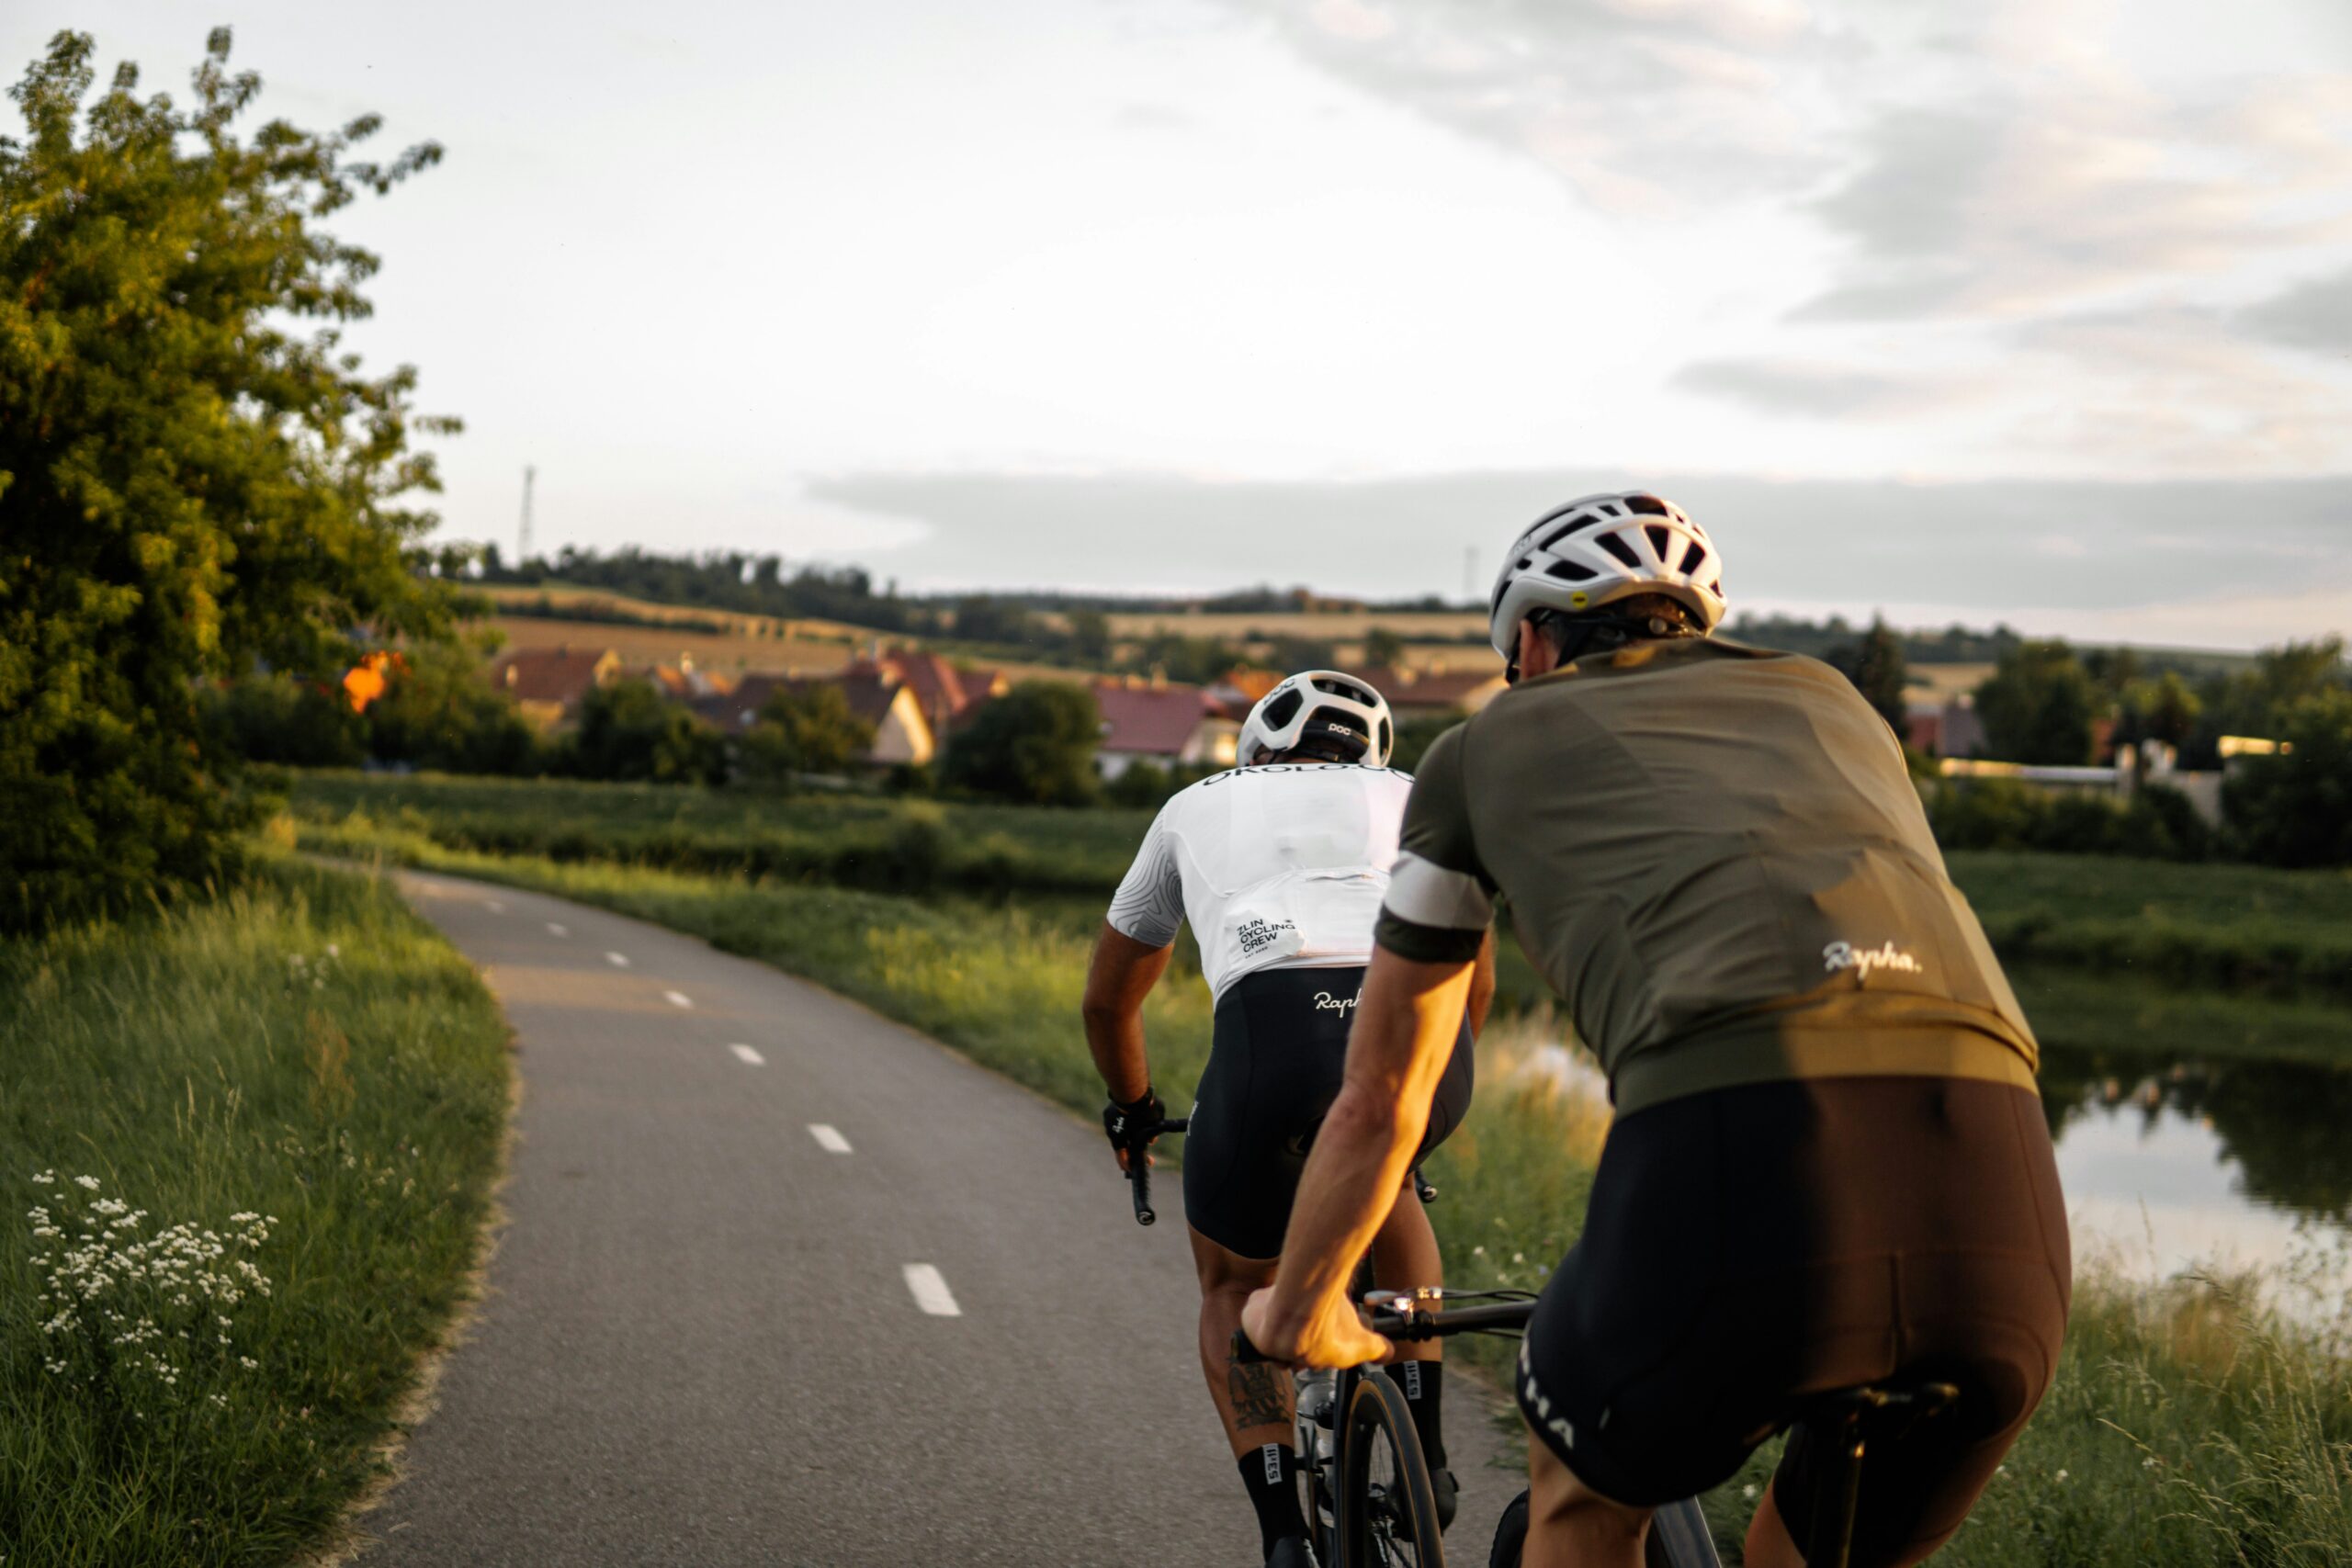 découvrez l'univers du cyclisme avec nos articles, actualités et conseils pour les passionnés de vélo.